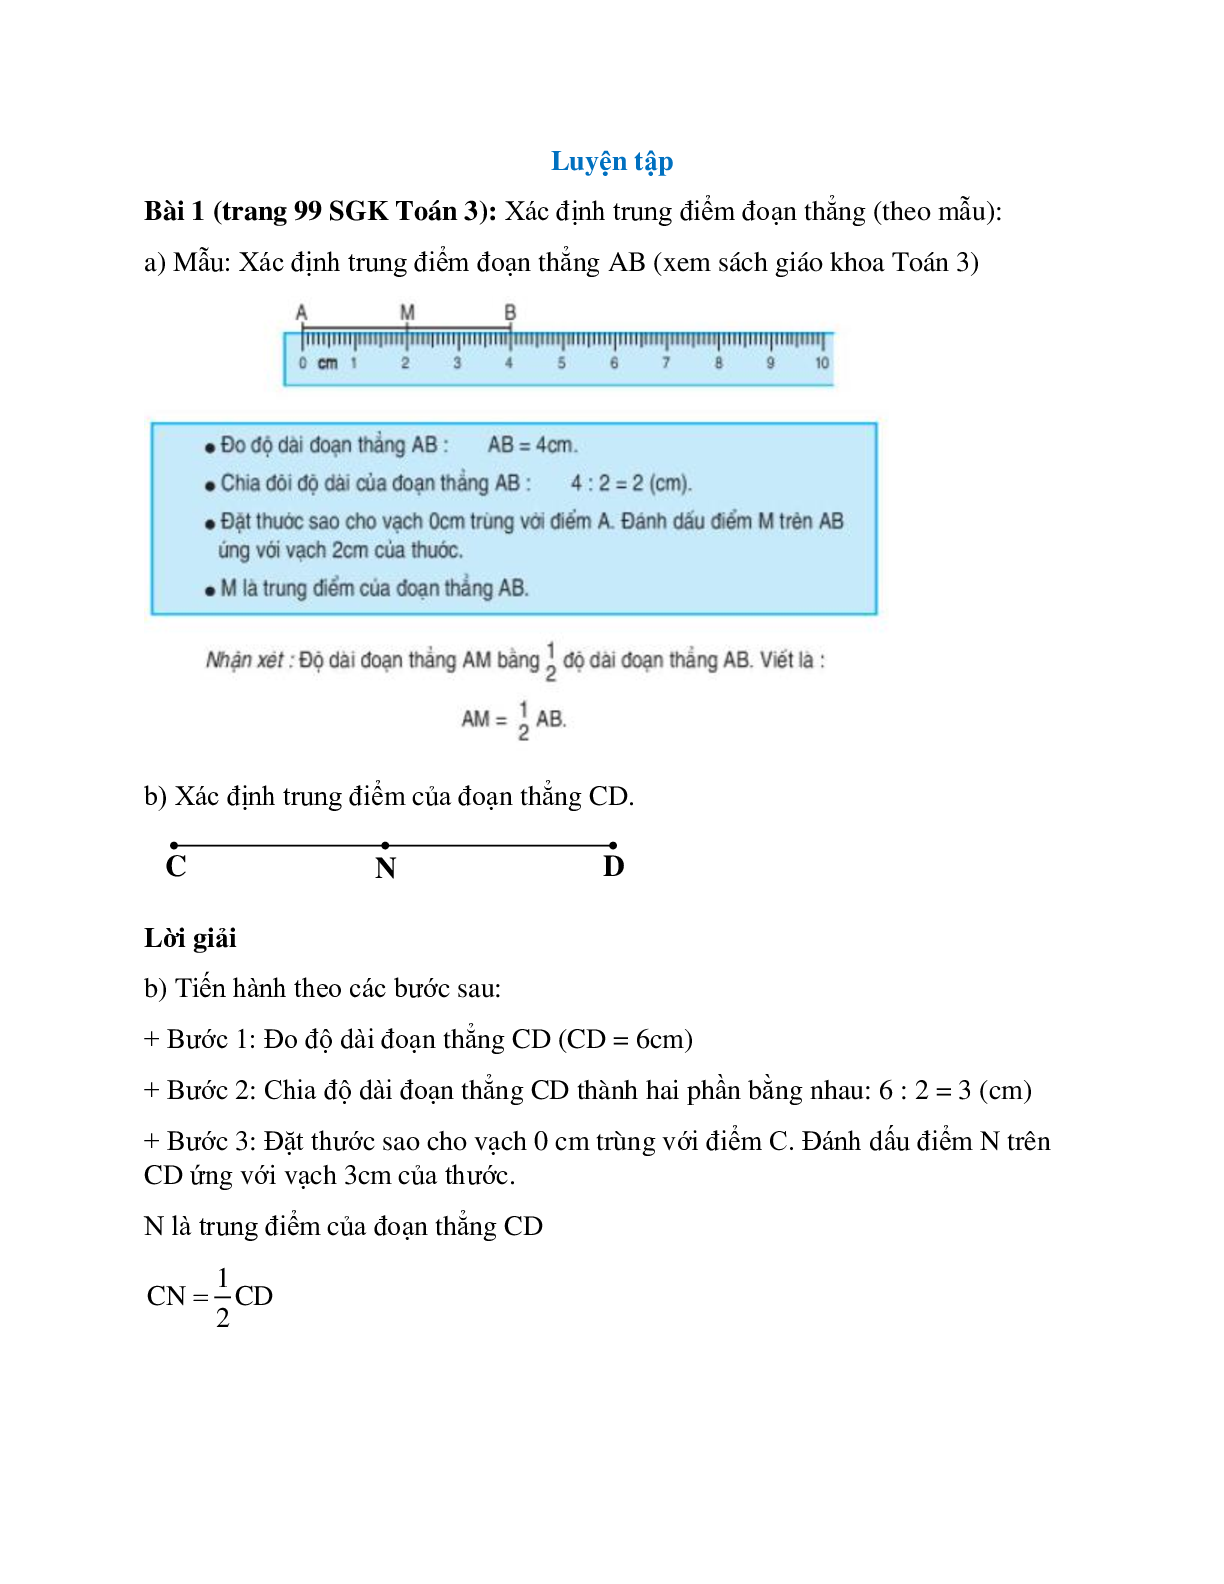 Xác định trung điểm đoạn thẳng (theo mẫu) Bài 1 trang 99 SGK Toán 3 (trang 1)